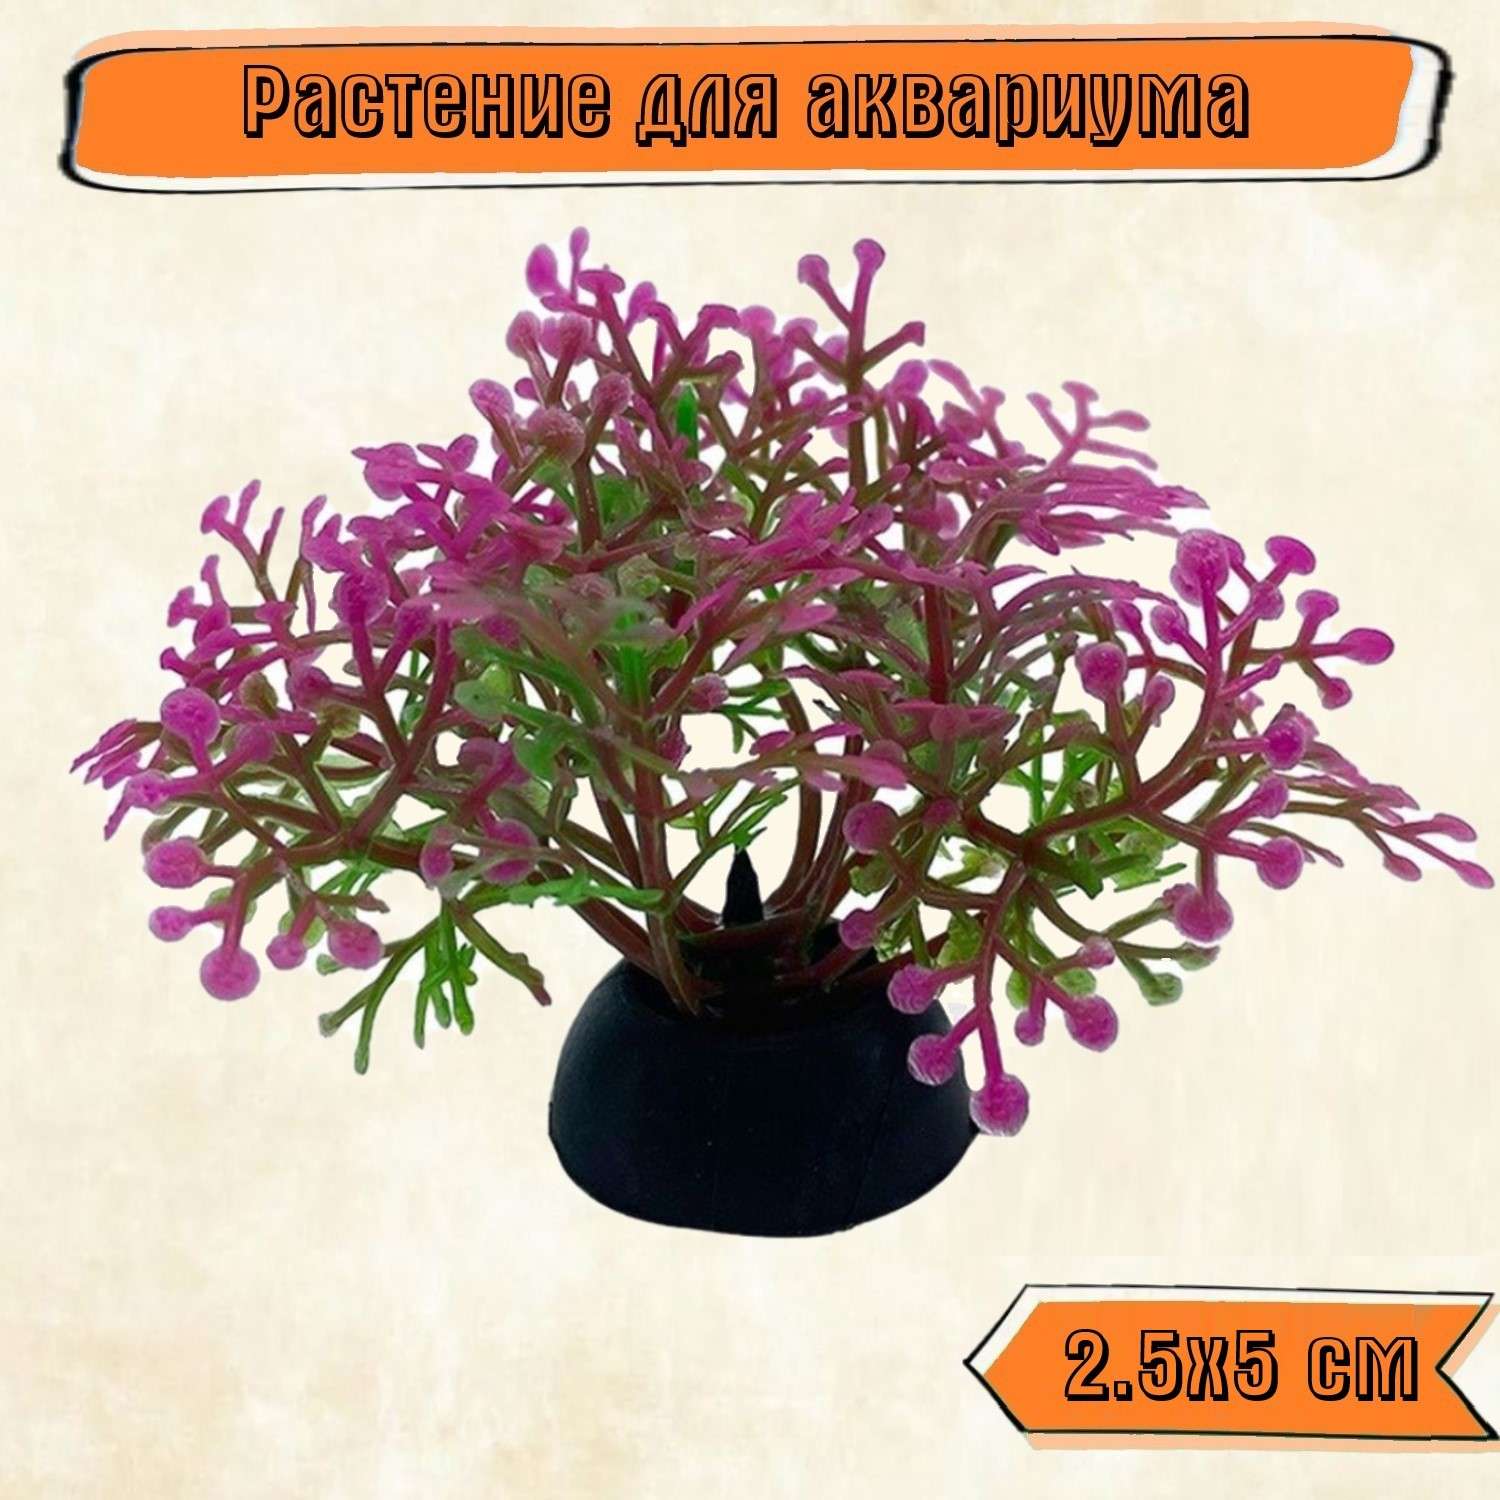 Аквариумное растение Rabizy кустик 2.5х5 см - фото 1